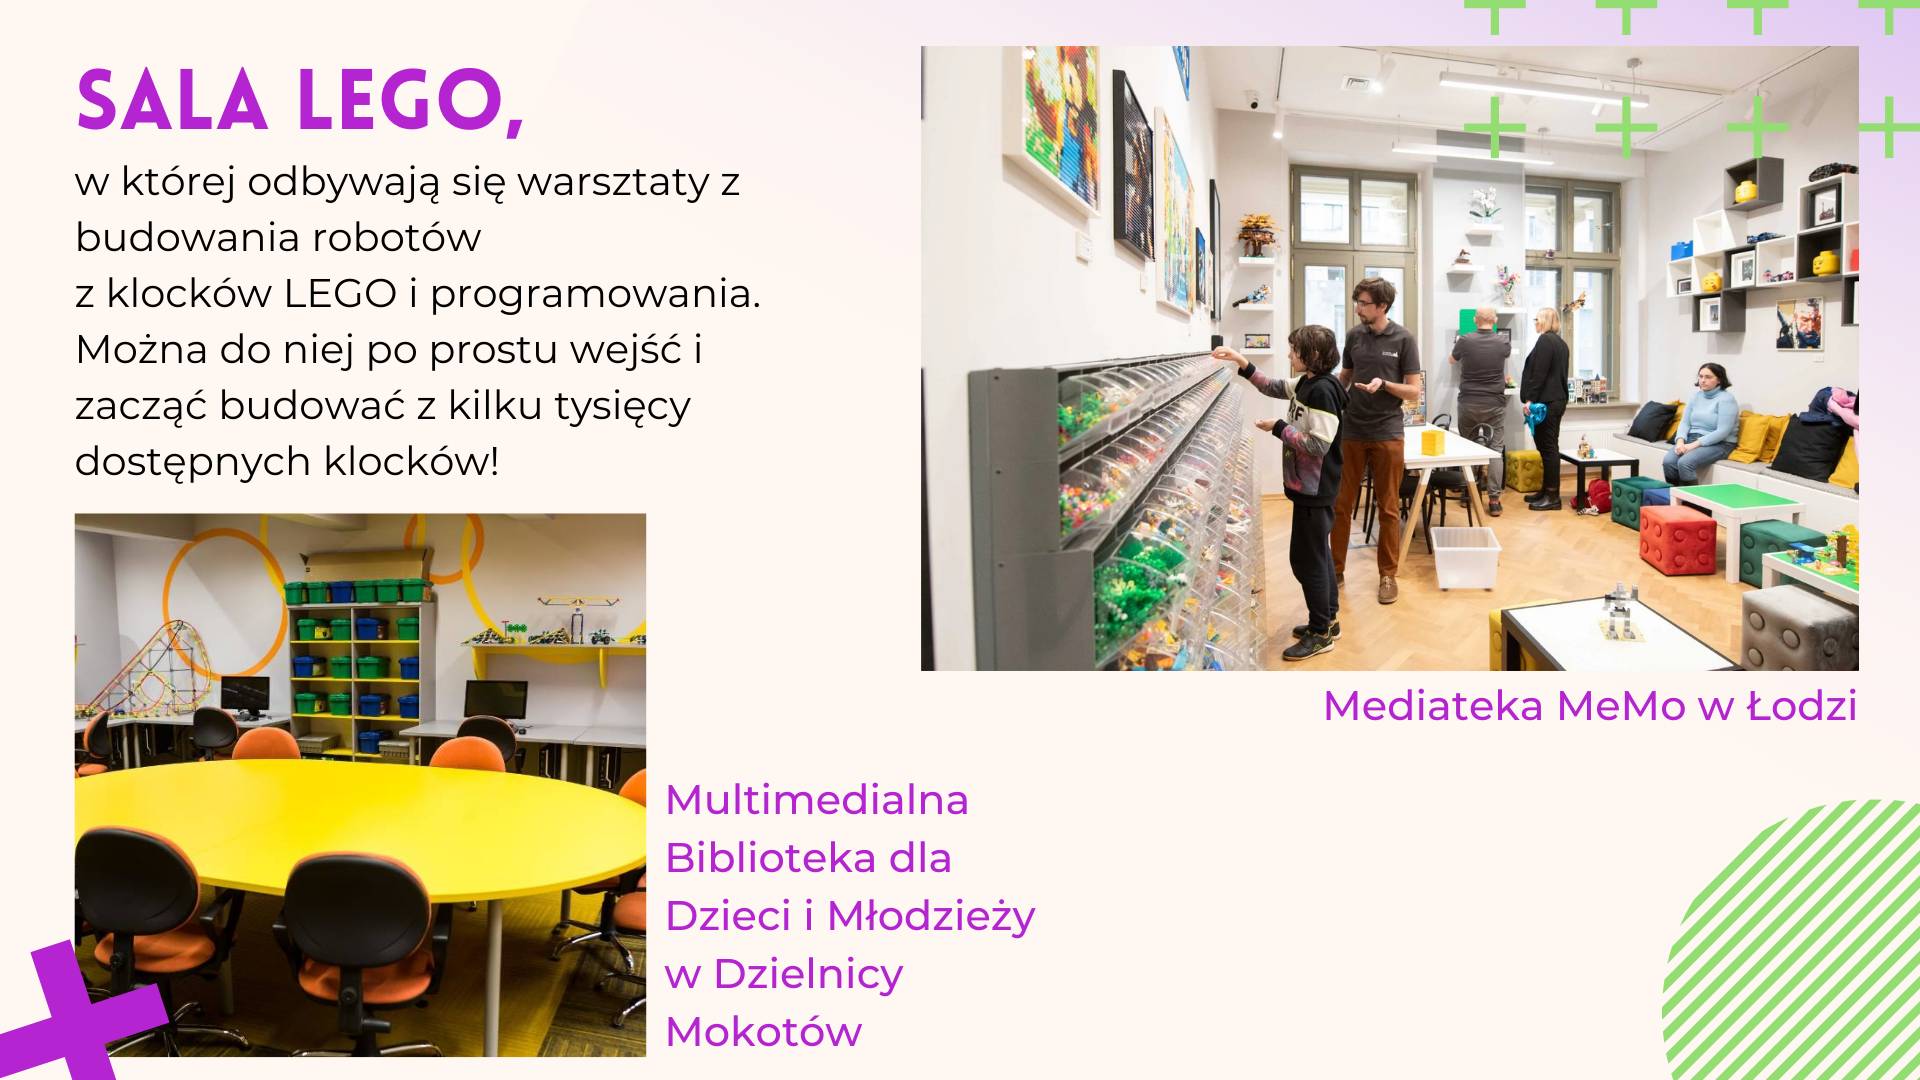 fragment prezentacji pokazujący sale lego w Bibliotece dla Dzieci i Młodzieży na Mokotowie w Warszawie